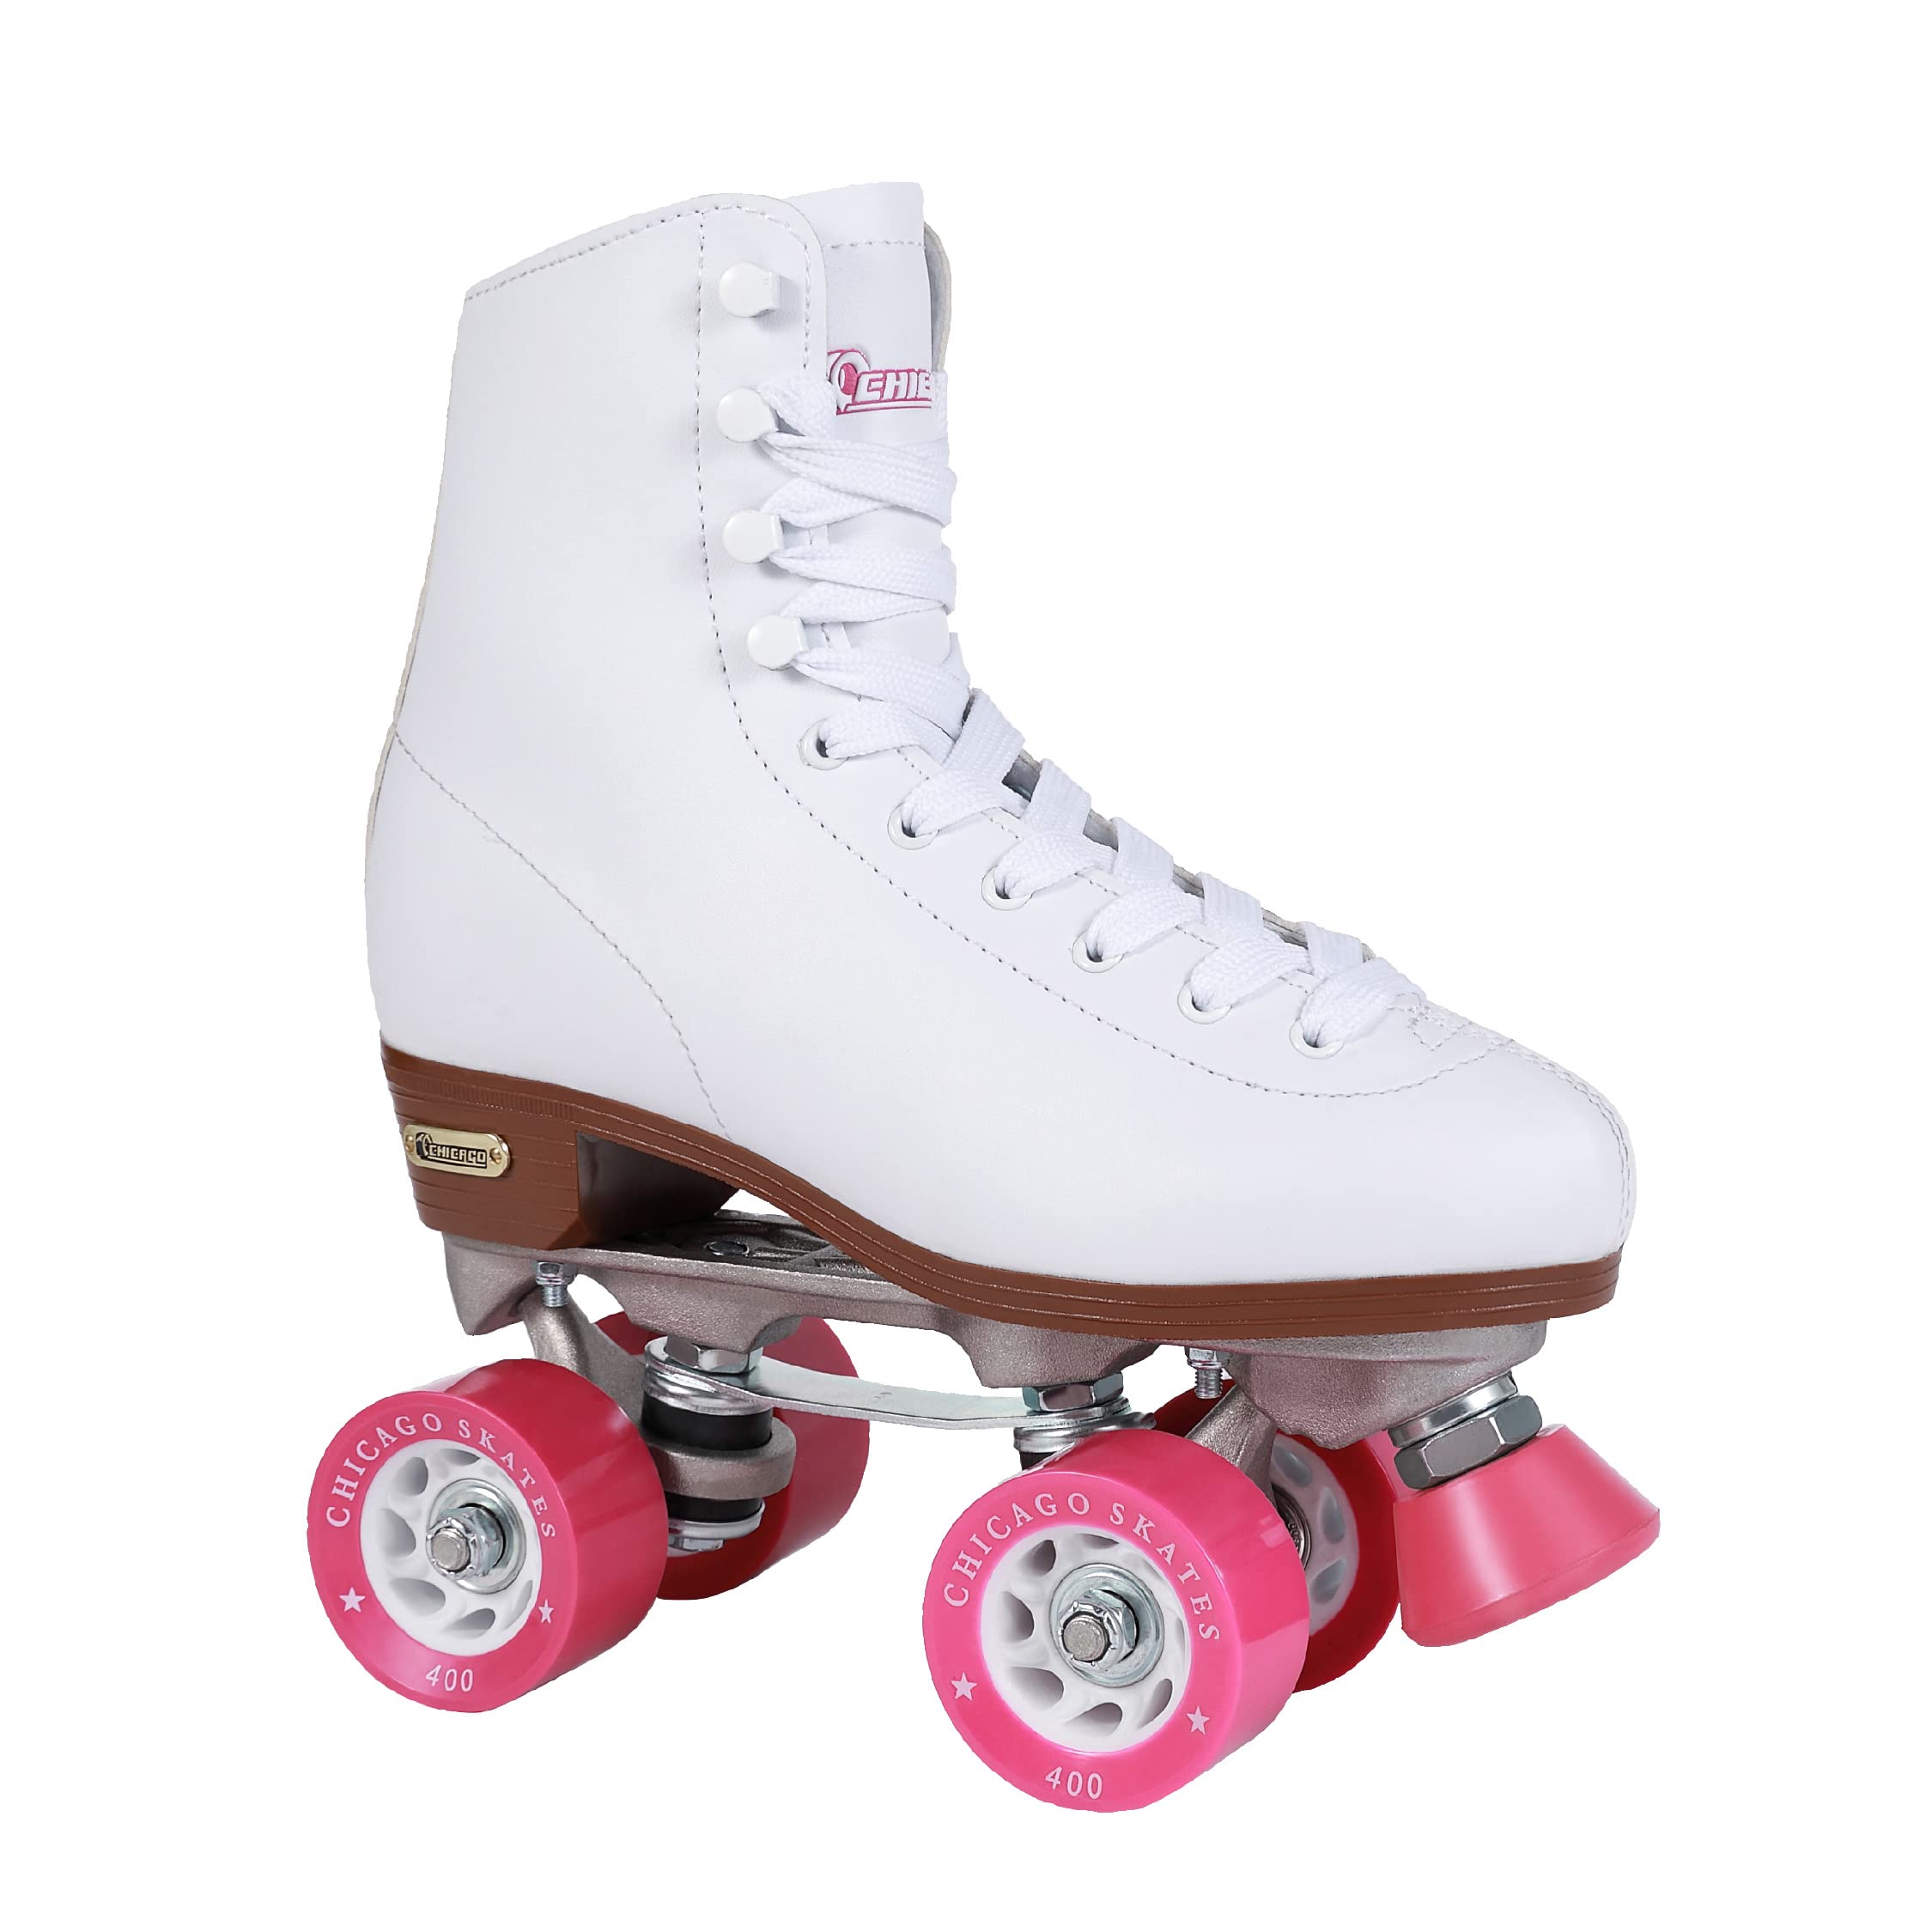 CHICAGO Women's and Girl's Classic Roller Skates - Premium White Quad Rink Skates